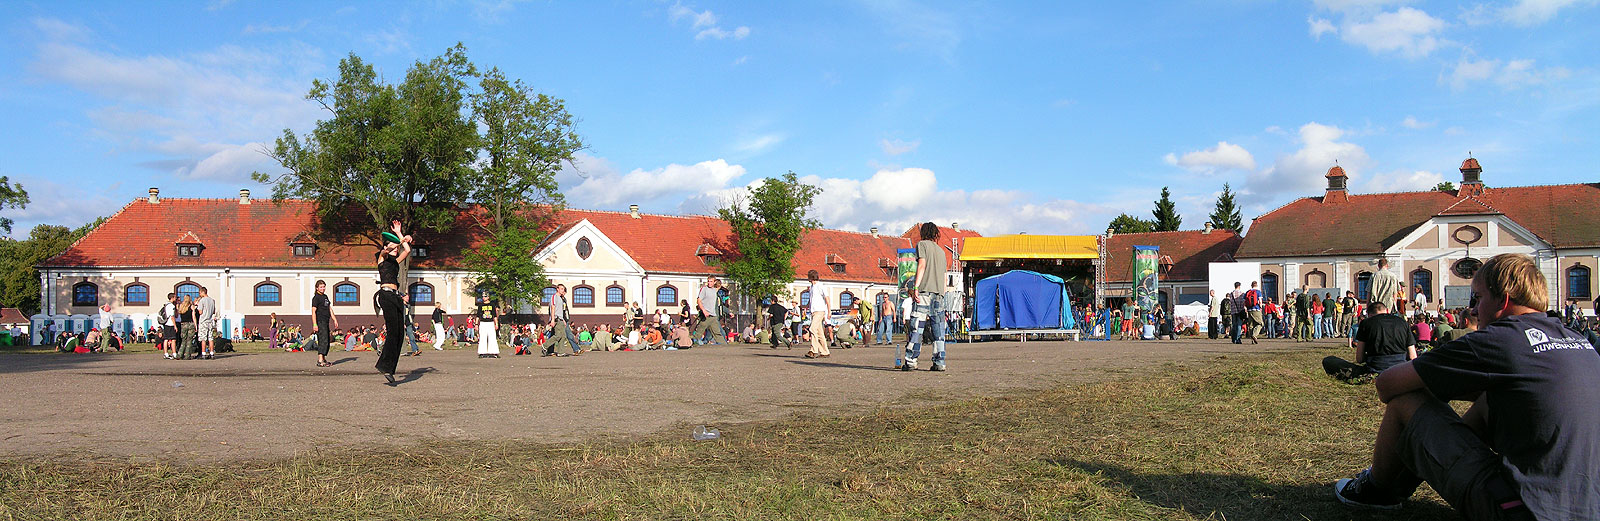 plac festiwalowy